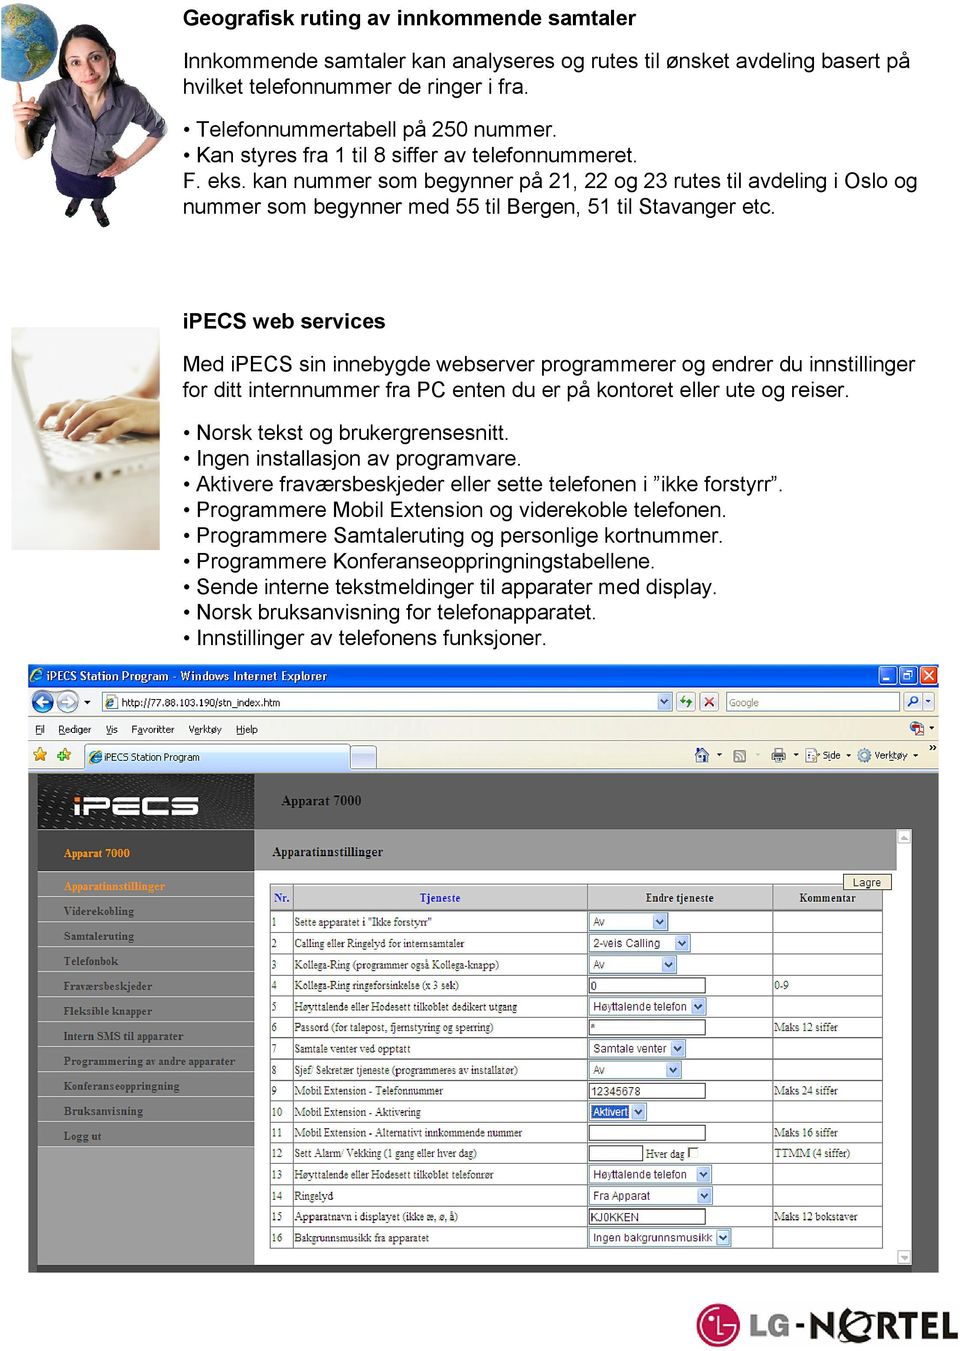 ipecs web services Med ipecs sin innebygde webserver programmerer og endrer du innstillinger for ditt internnummer fra PC enten du er på kontoret eller ute og reiser. Norsk tekst og brukergrensesnitt.